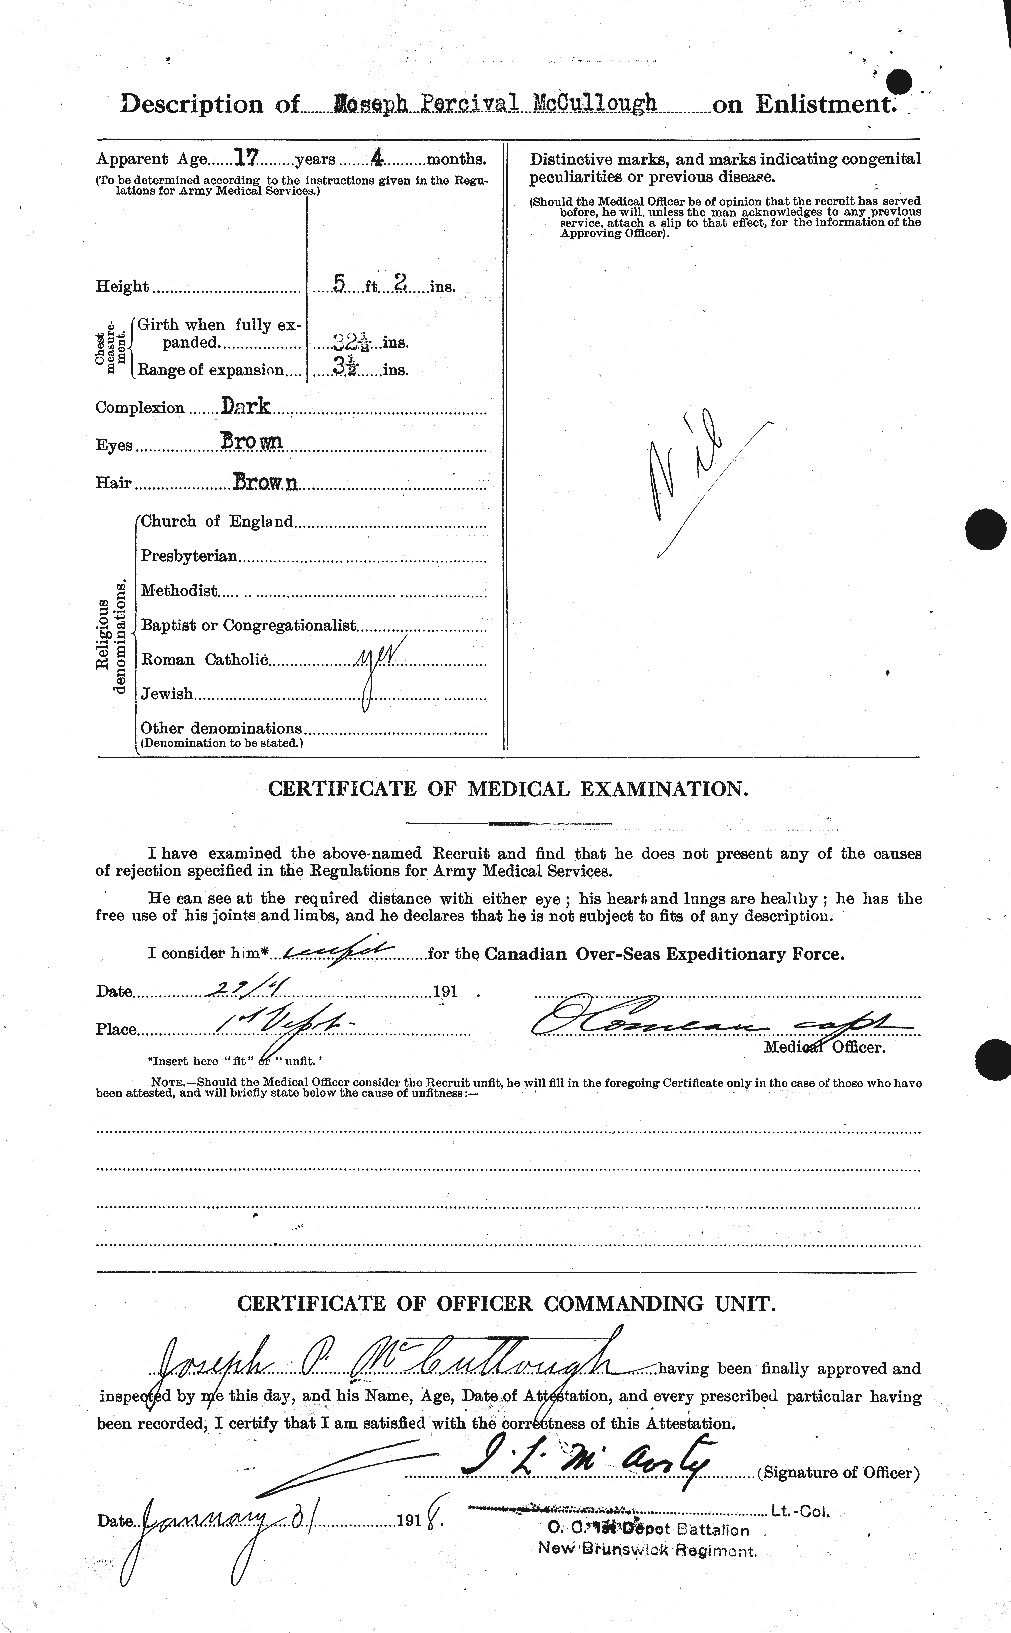 Dossiers du Personnel de la Première Guerre mondiale - CEC 136891b